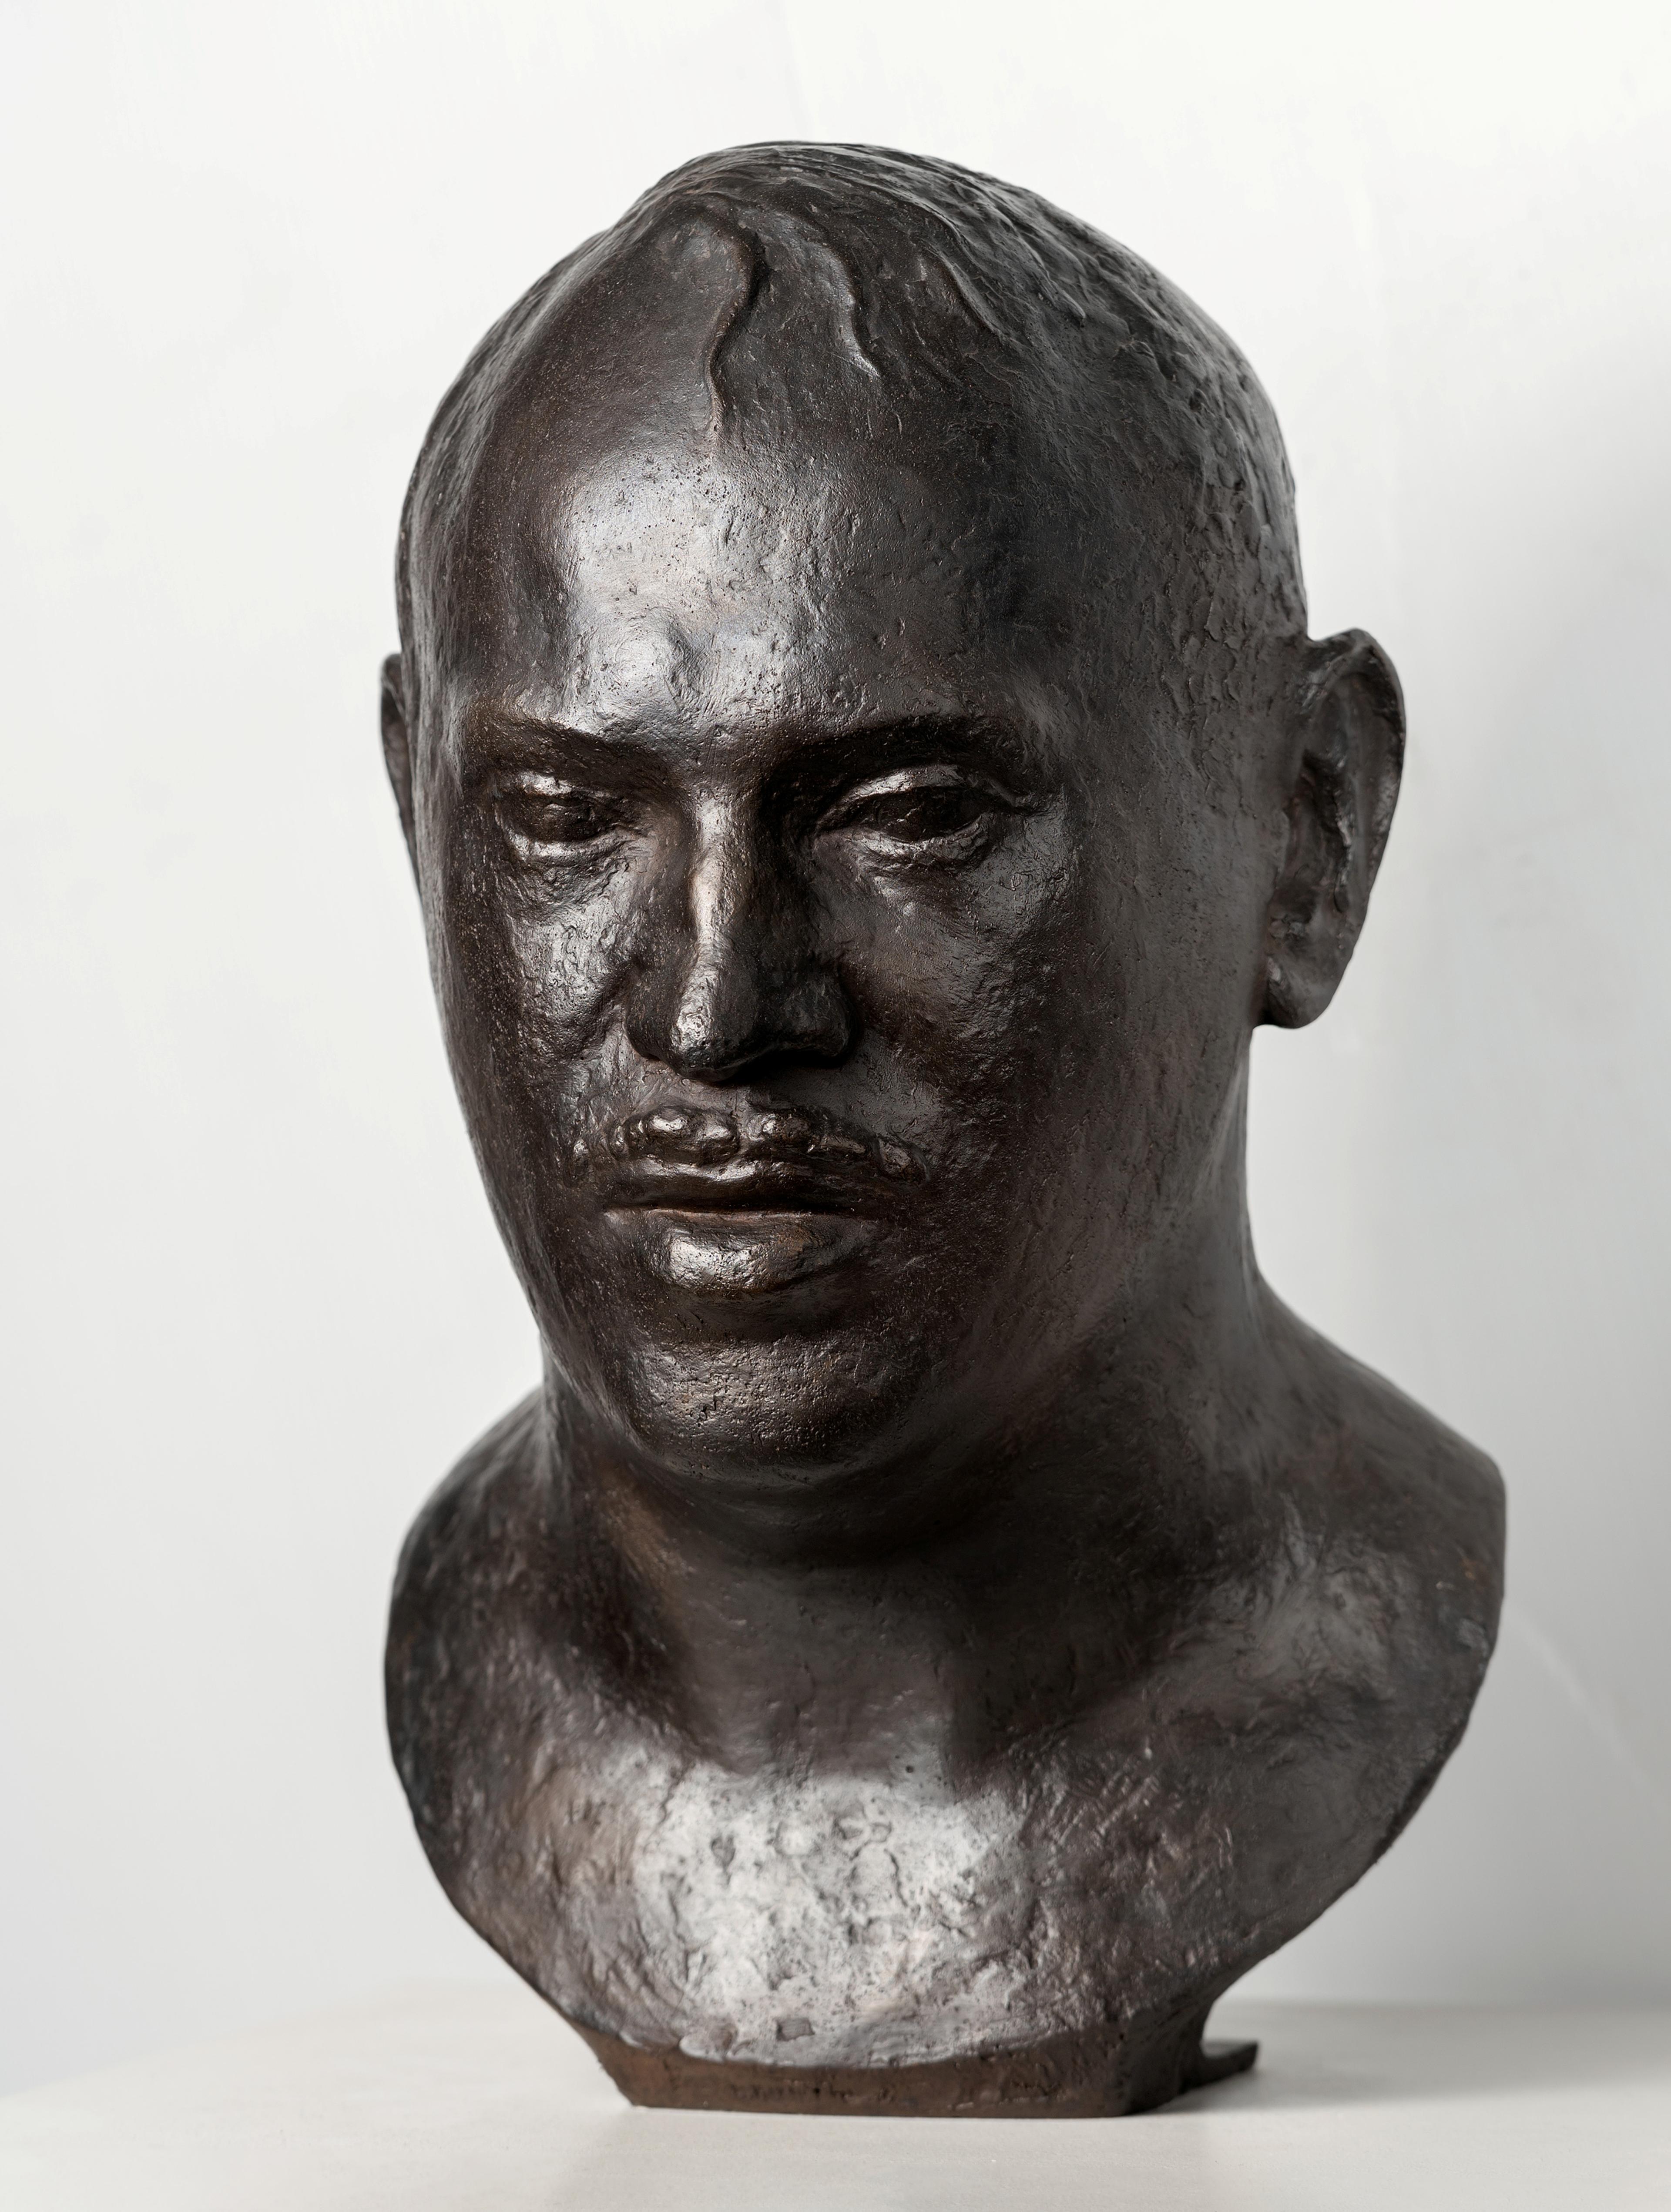 A bust depicting Rolf Stenersen